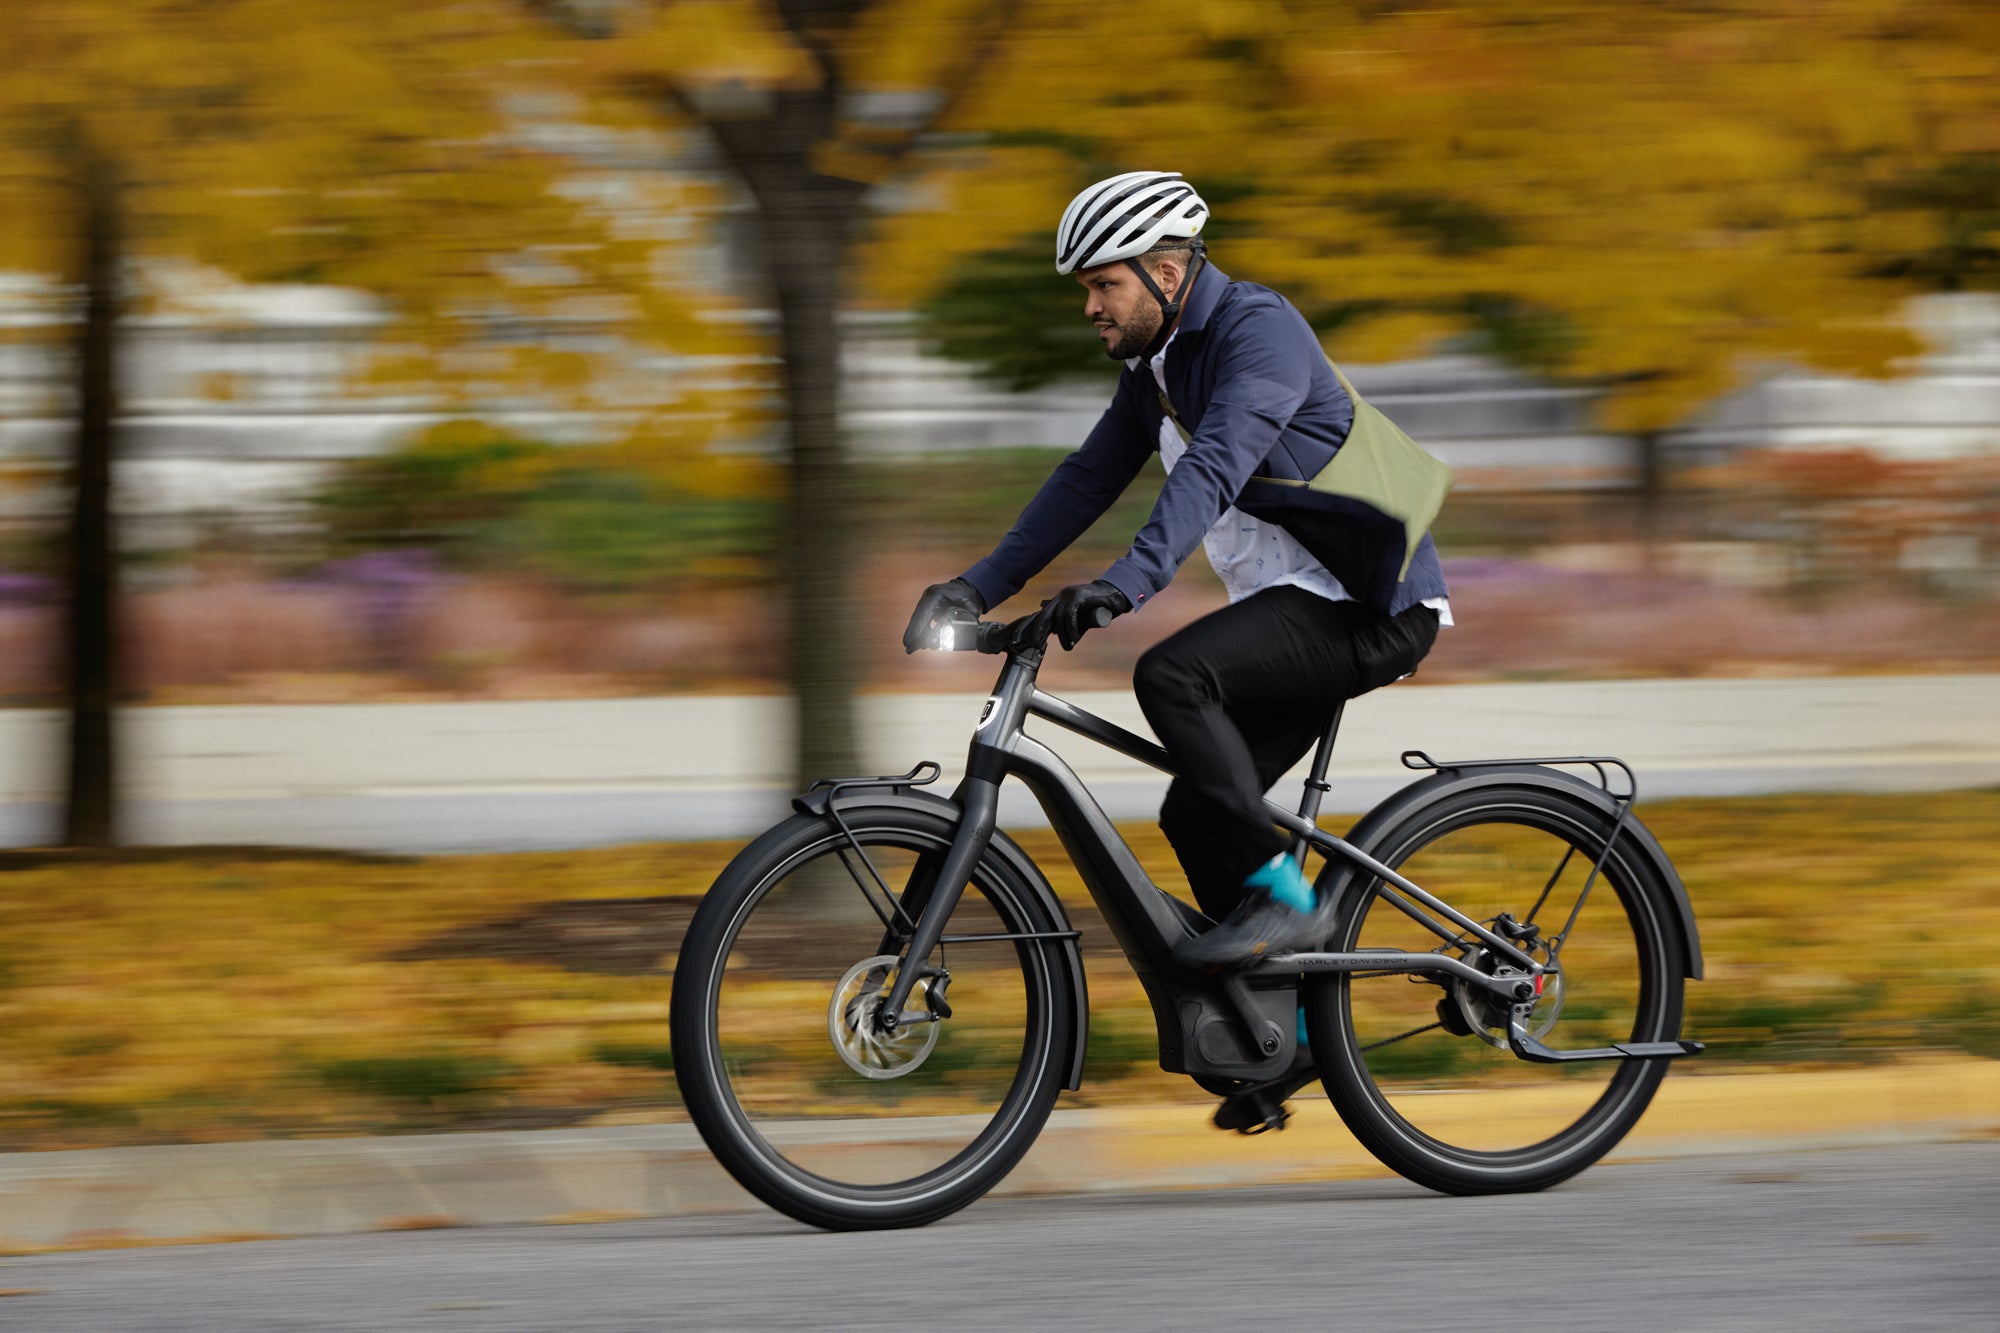 electric bicycles ilektrika podilata orthopetalia bikes